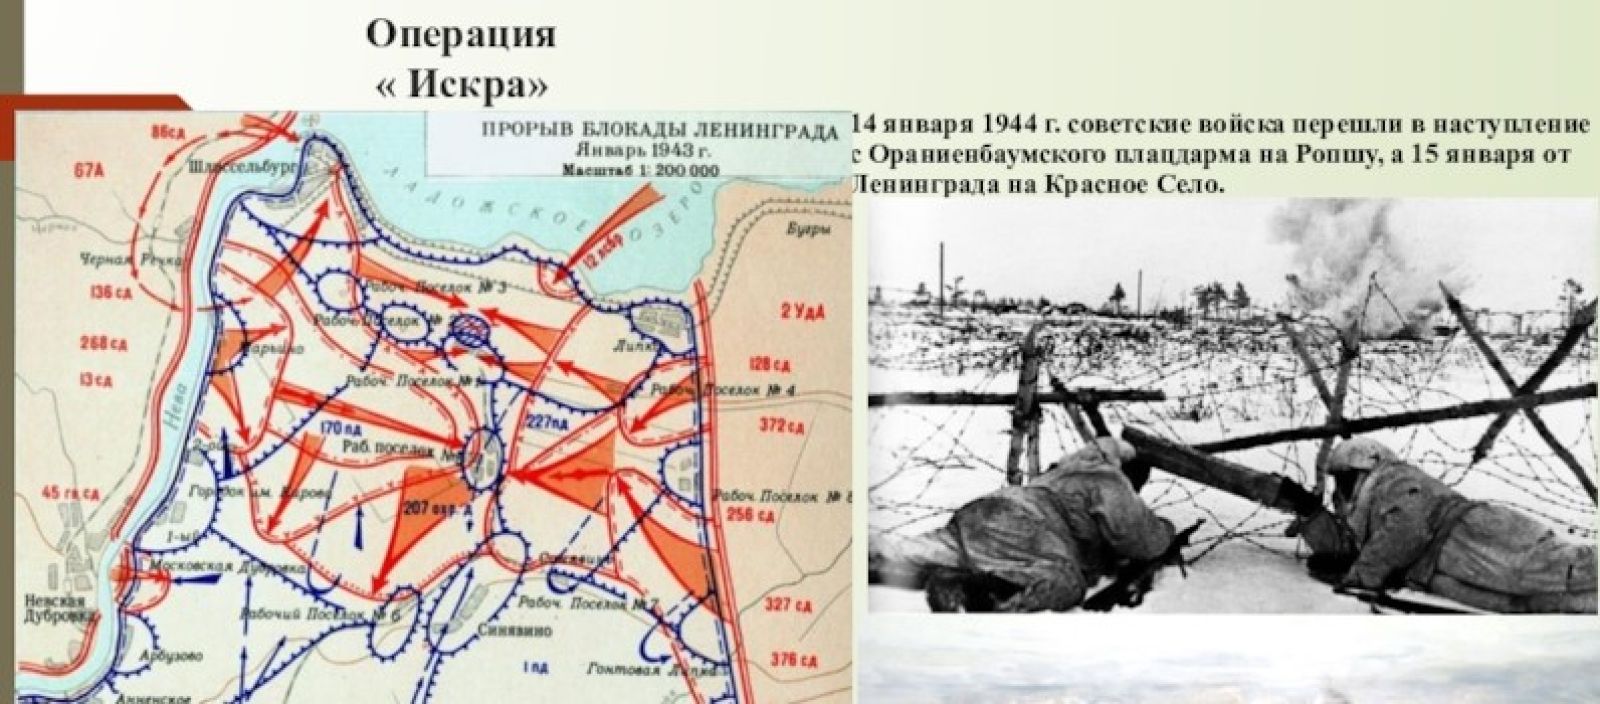 Блокада ленинграда кодовое название операции. Карта прорыва блокады Ленинграда в 1943 году. Прорыв блокады Ленинграда карта 1944.